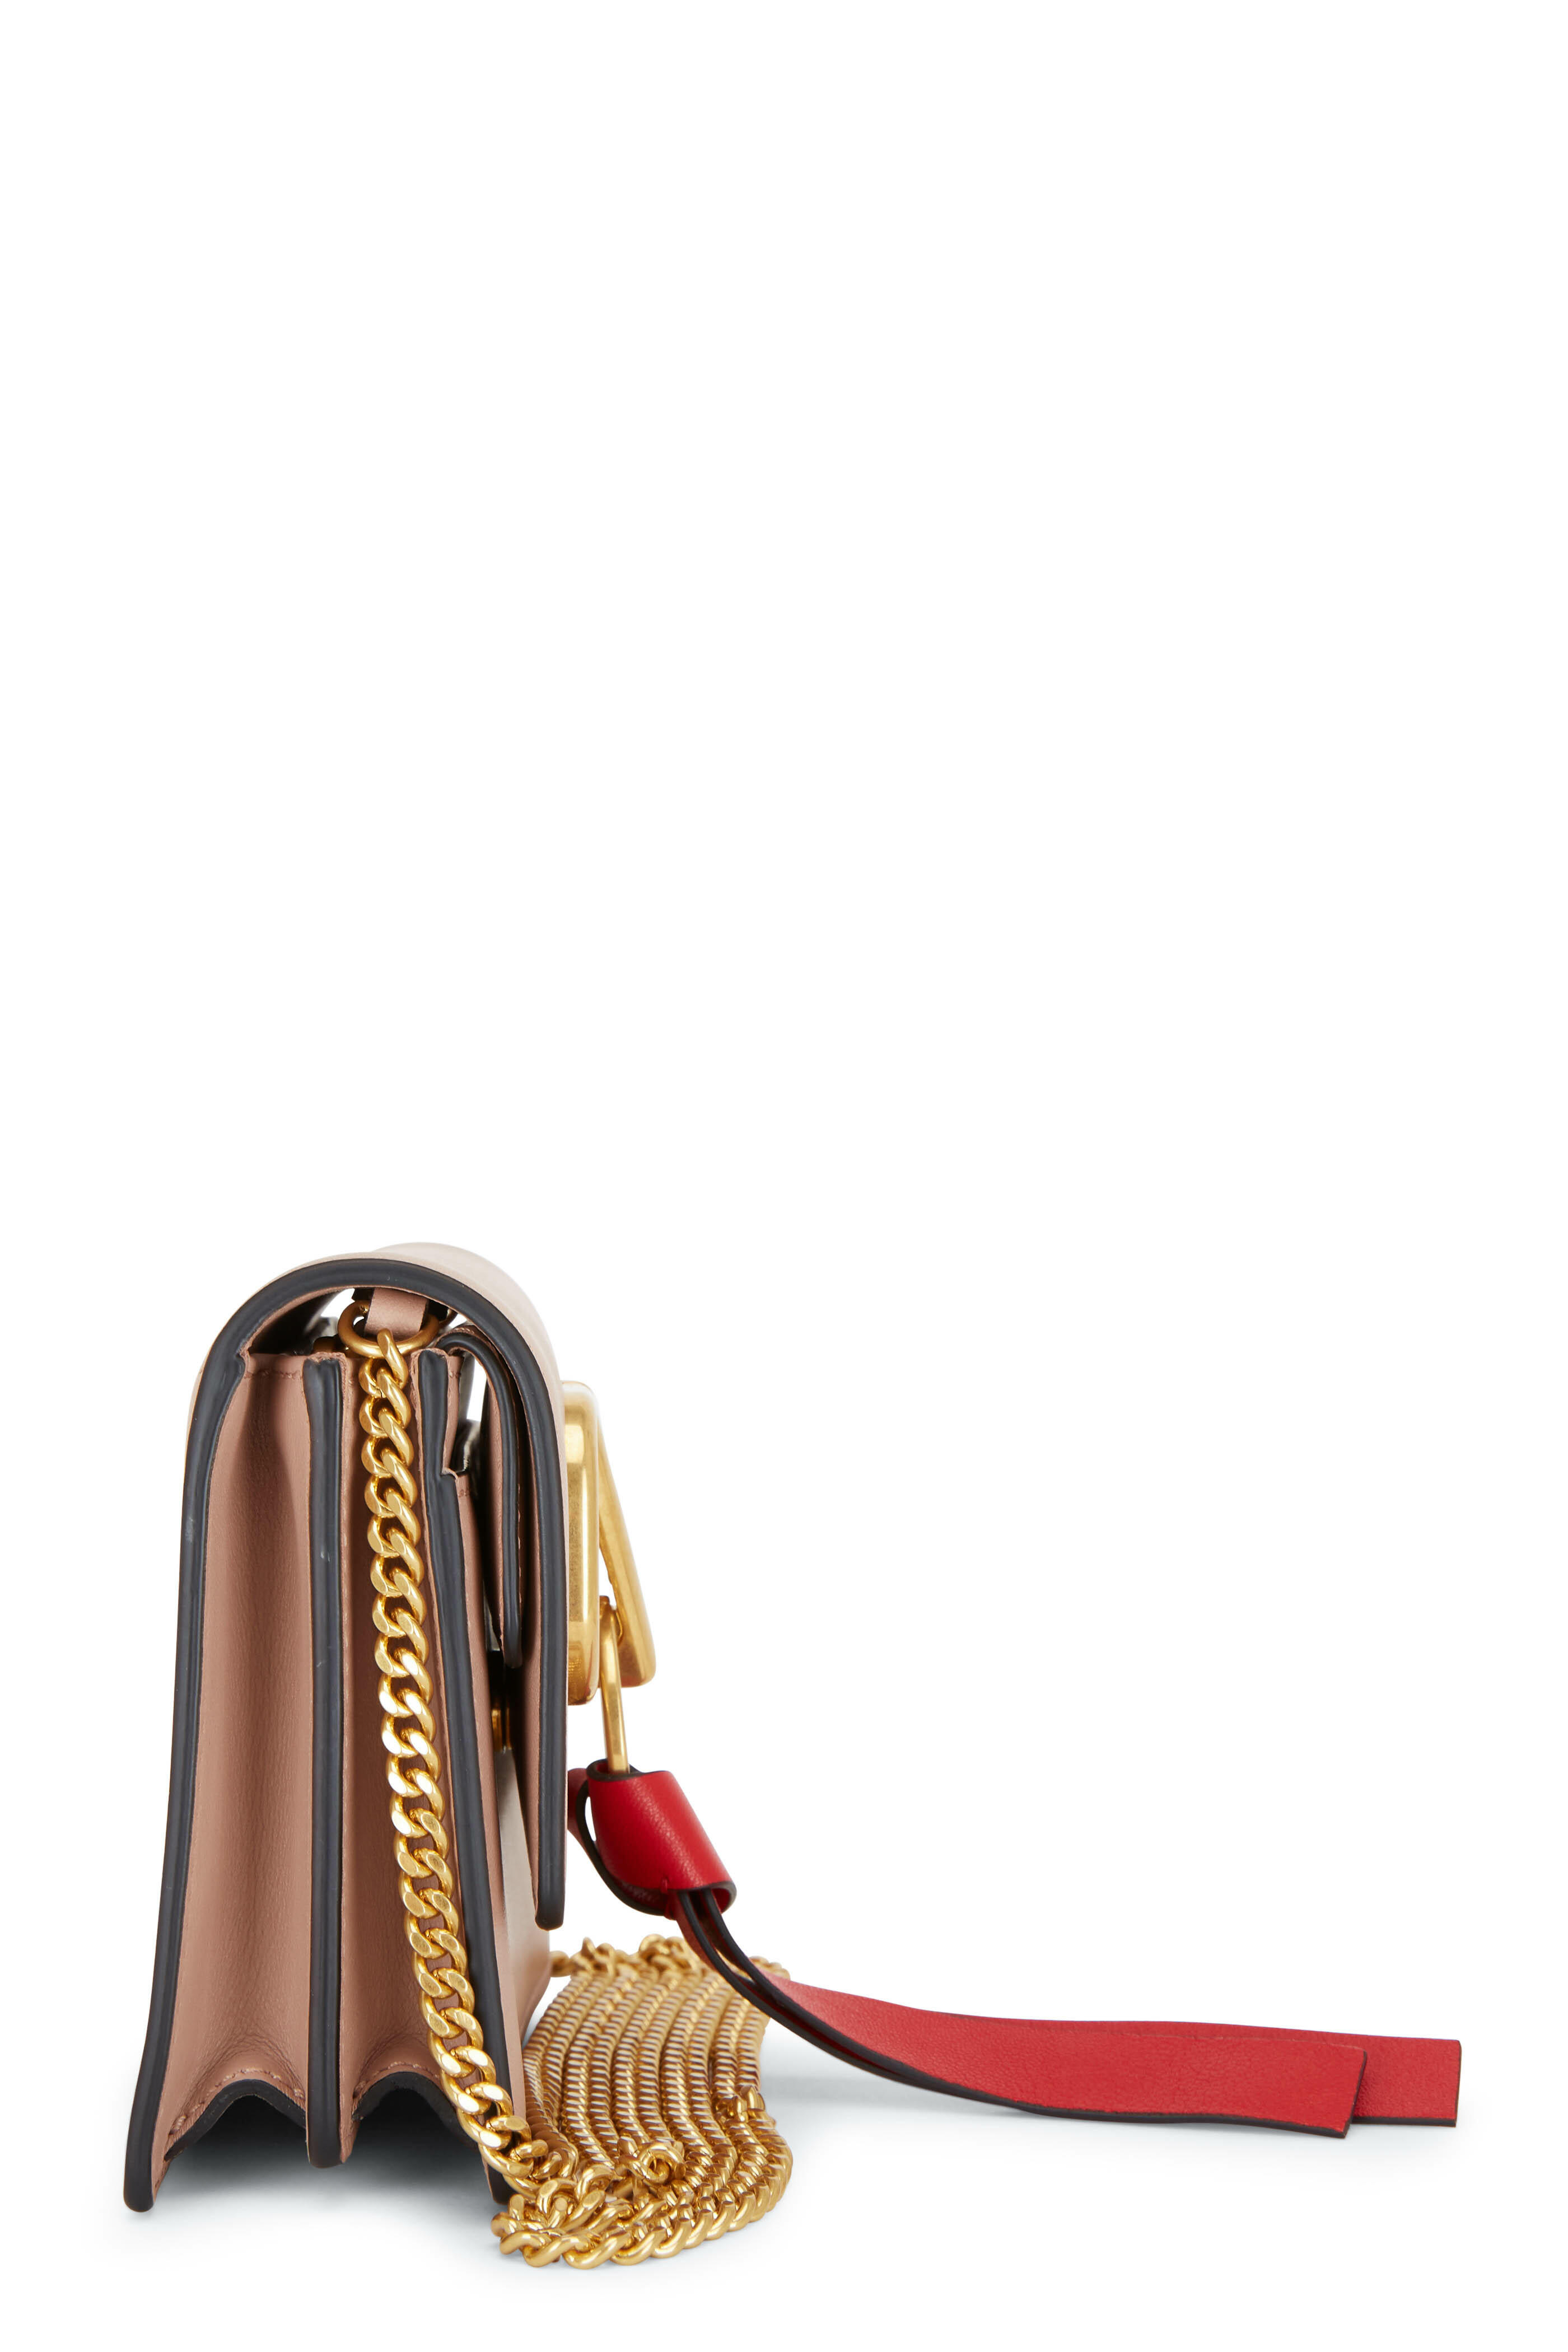 Valentino Rose Cannelle V-Ring Leather Shoulder Bag